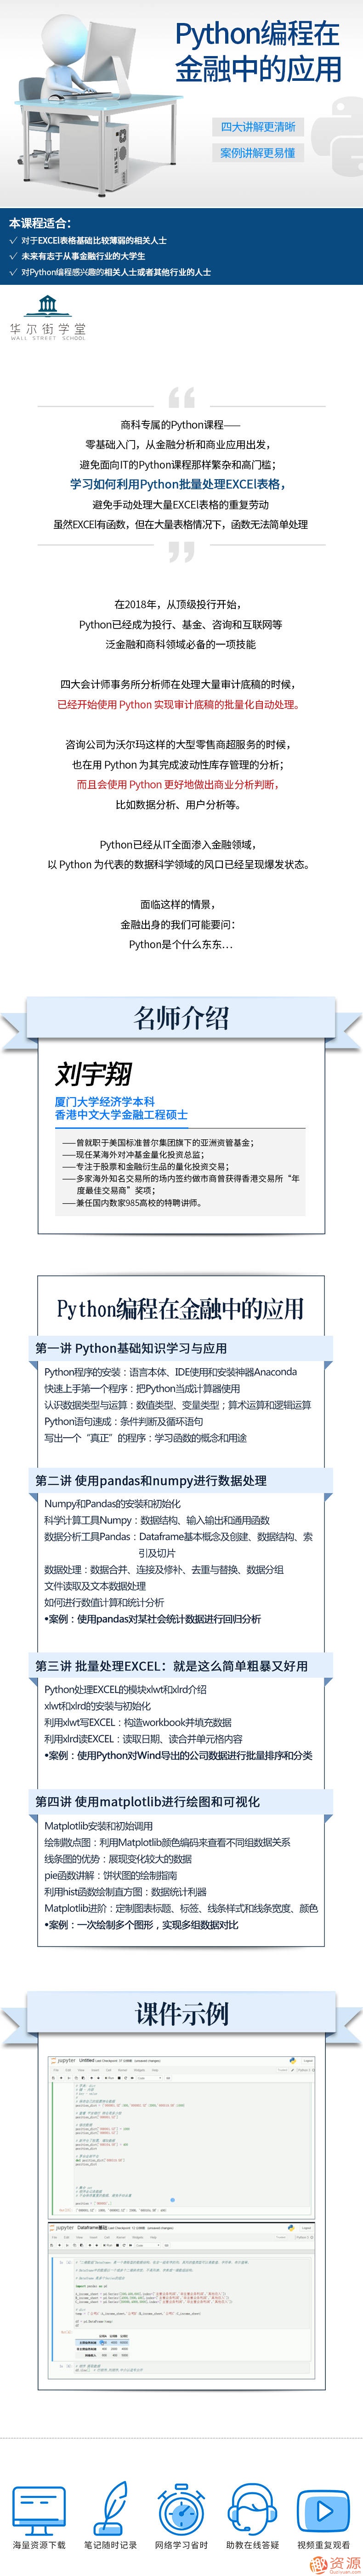 Python编程在金融中的应用_资源网站插图1